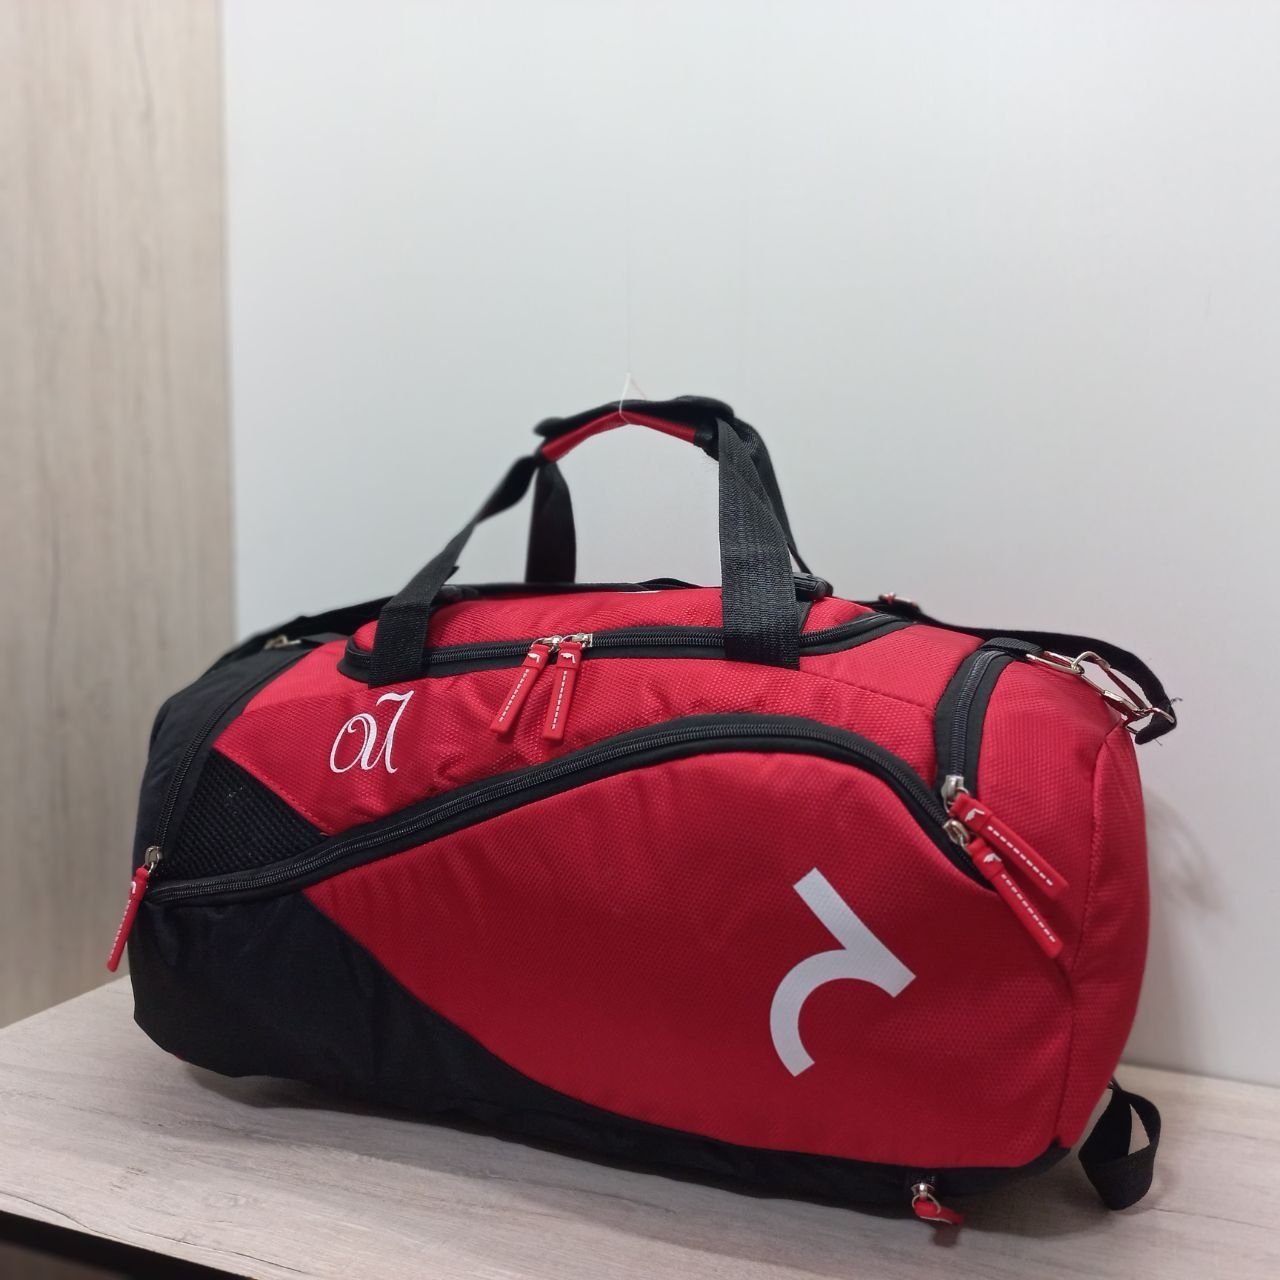 Спортивная сумка рюкзак 3в1. No:633

Размеры:
Длина 54см;
Ширина 24см;